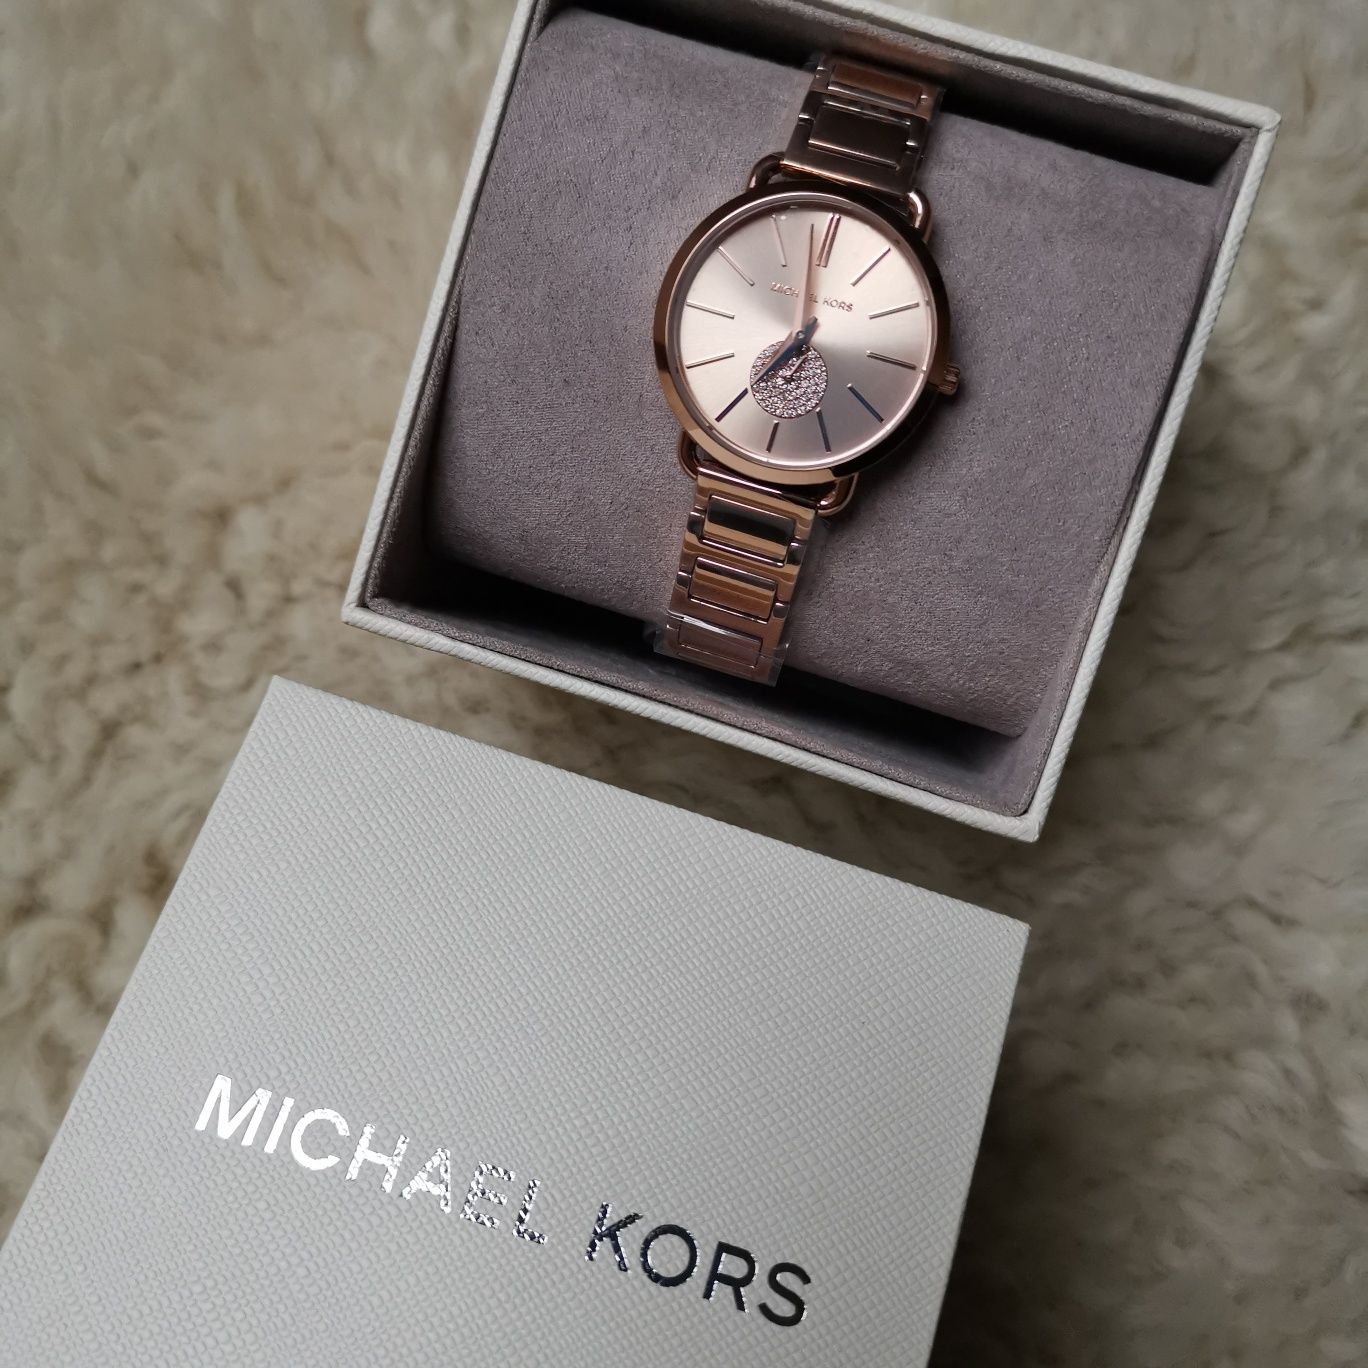 Nowy oryginalny zegarek Michael Kors model Portia różowe złoto